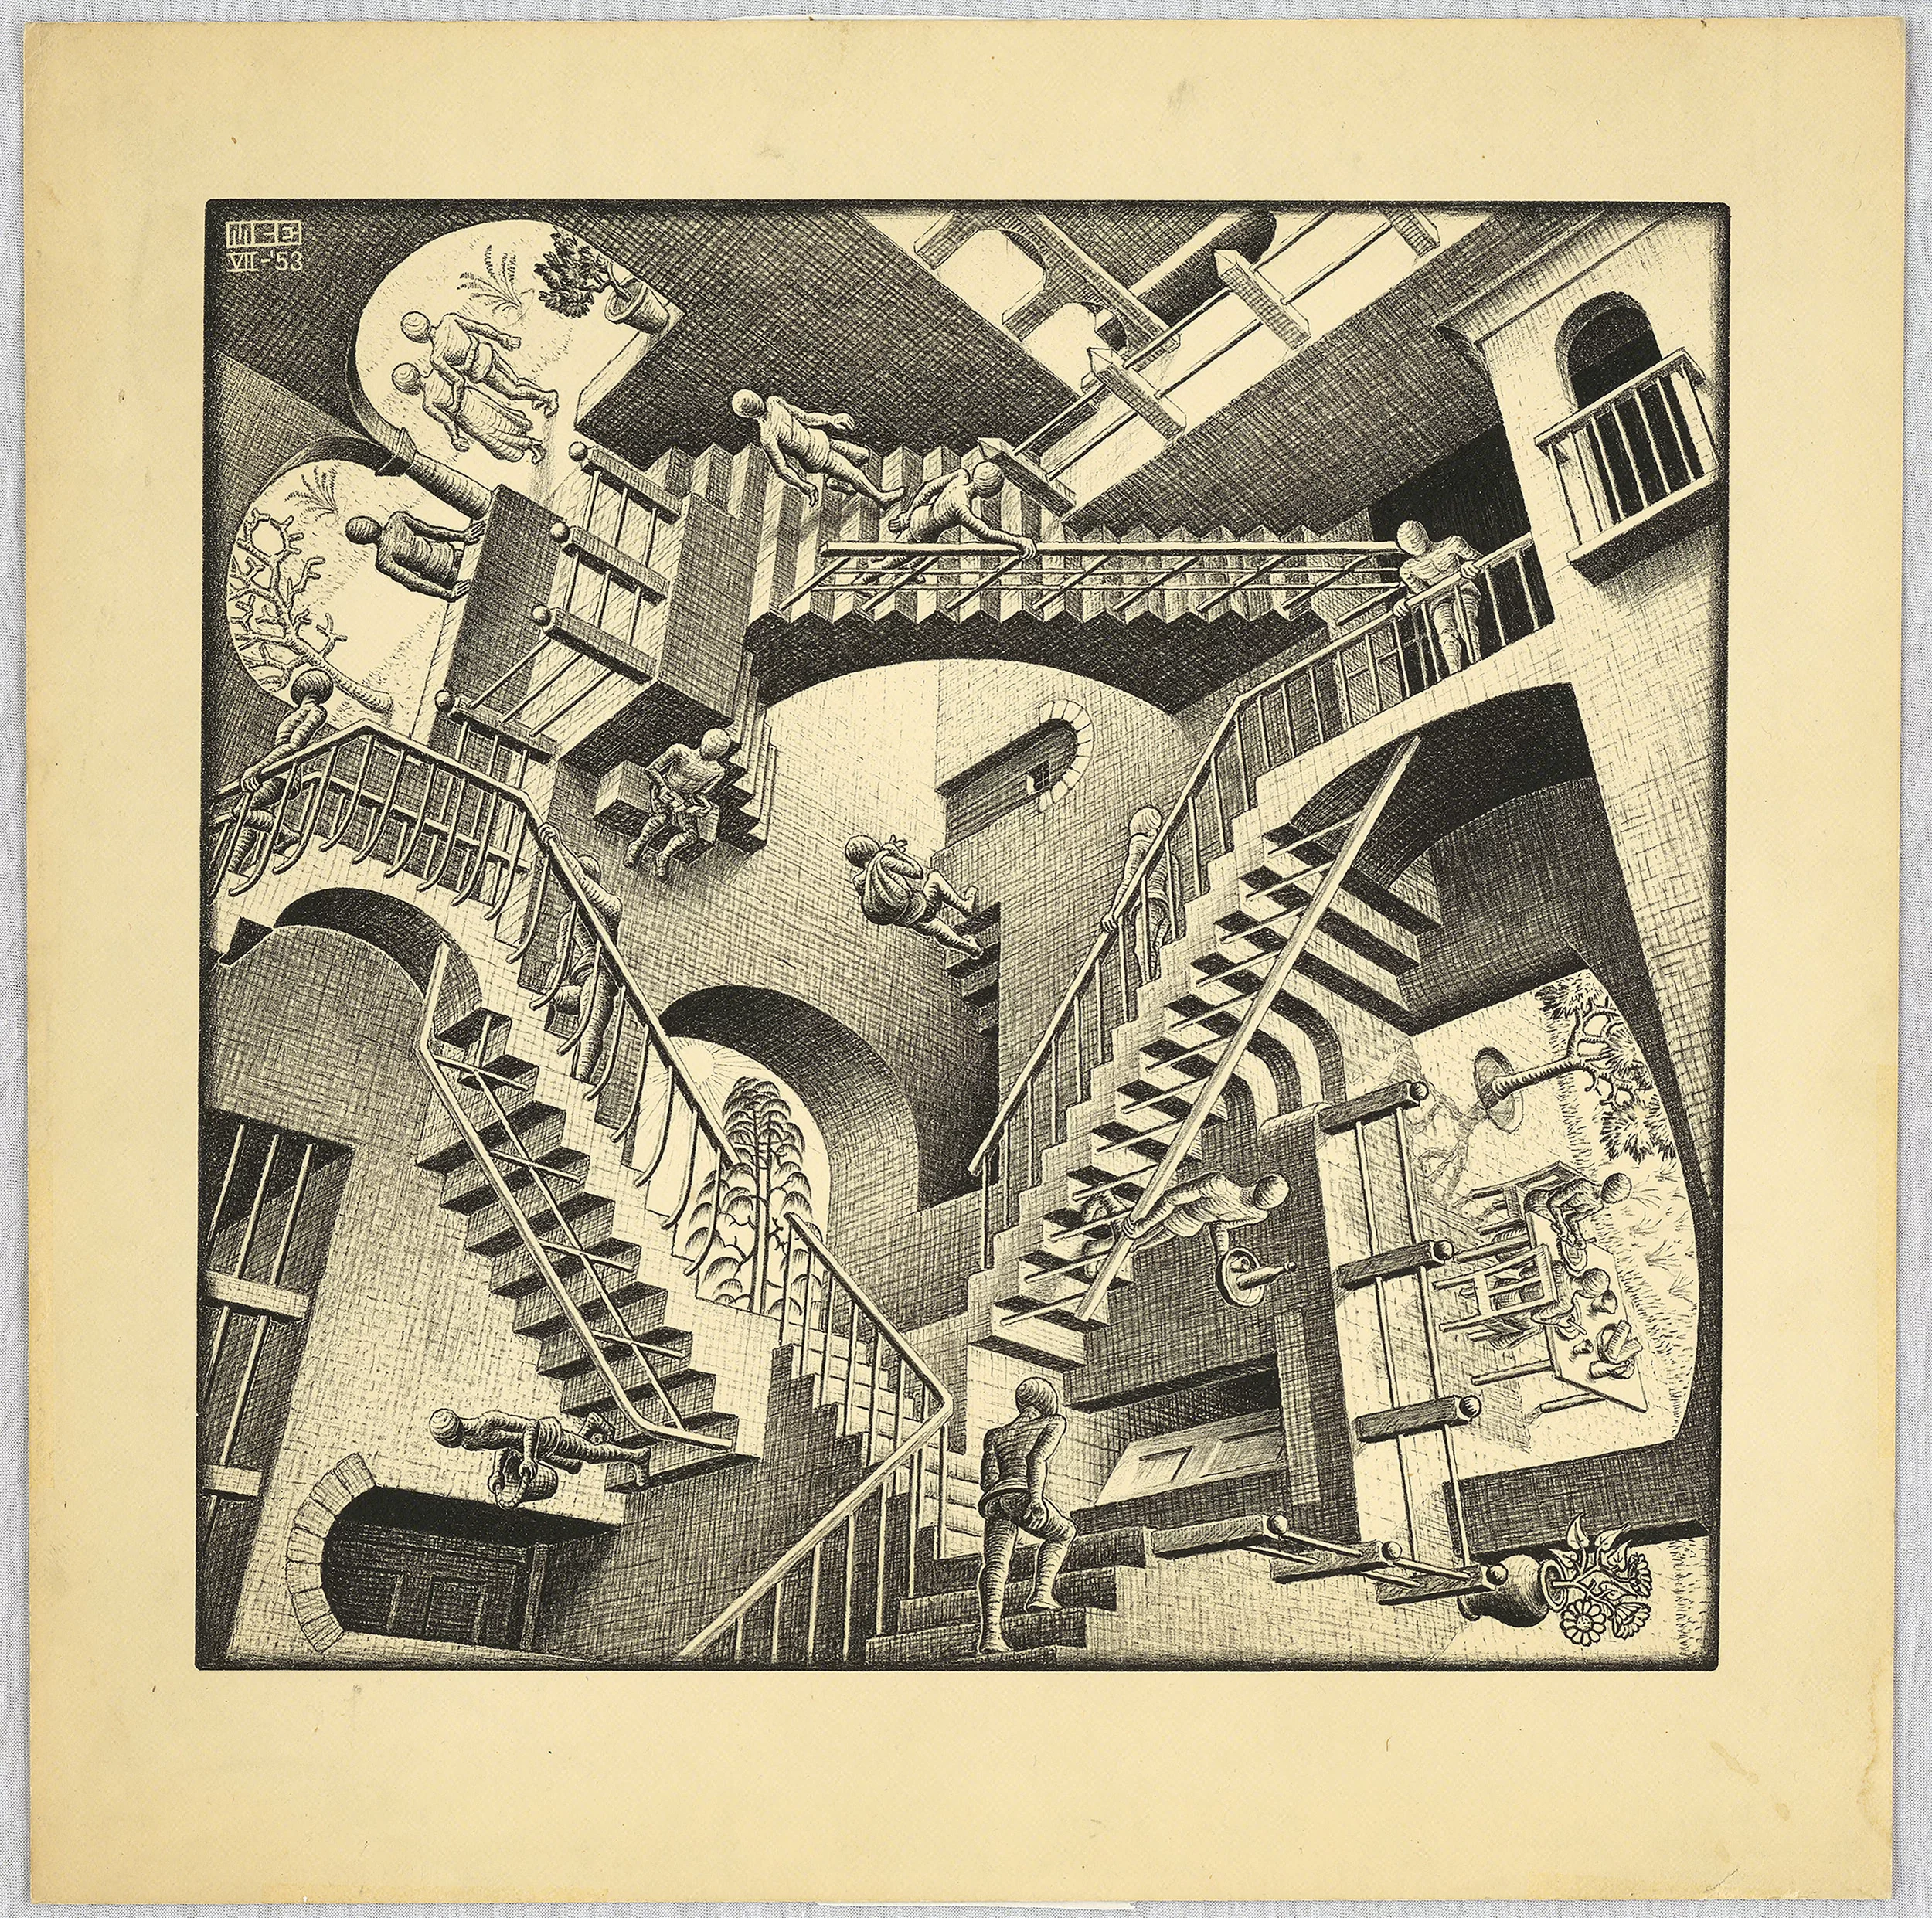 Scopri di più sull'articolo Escher